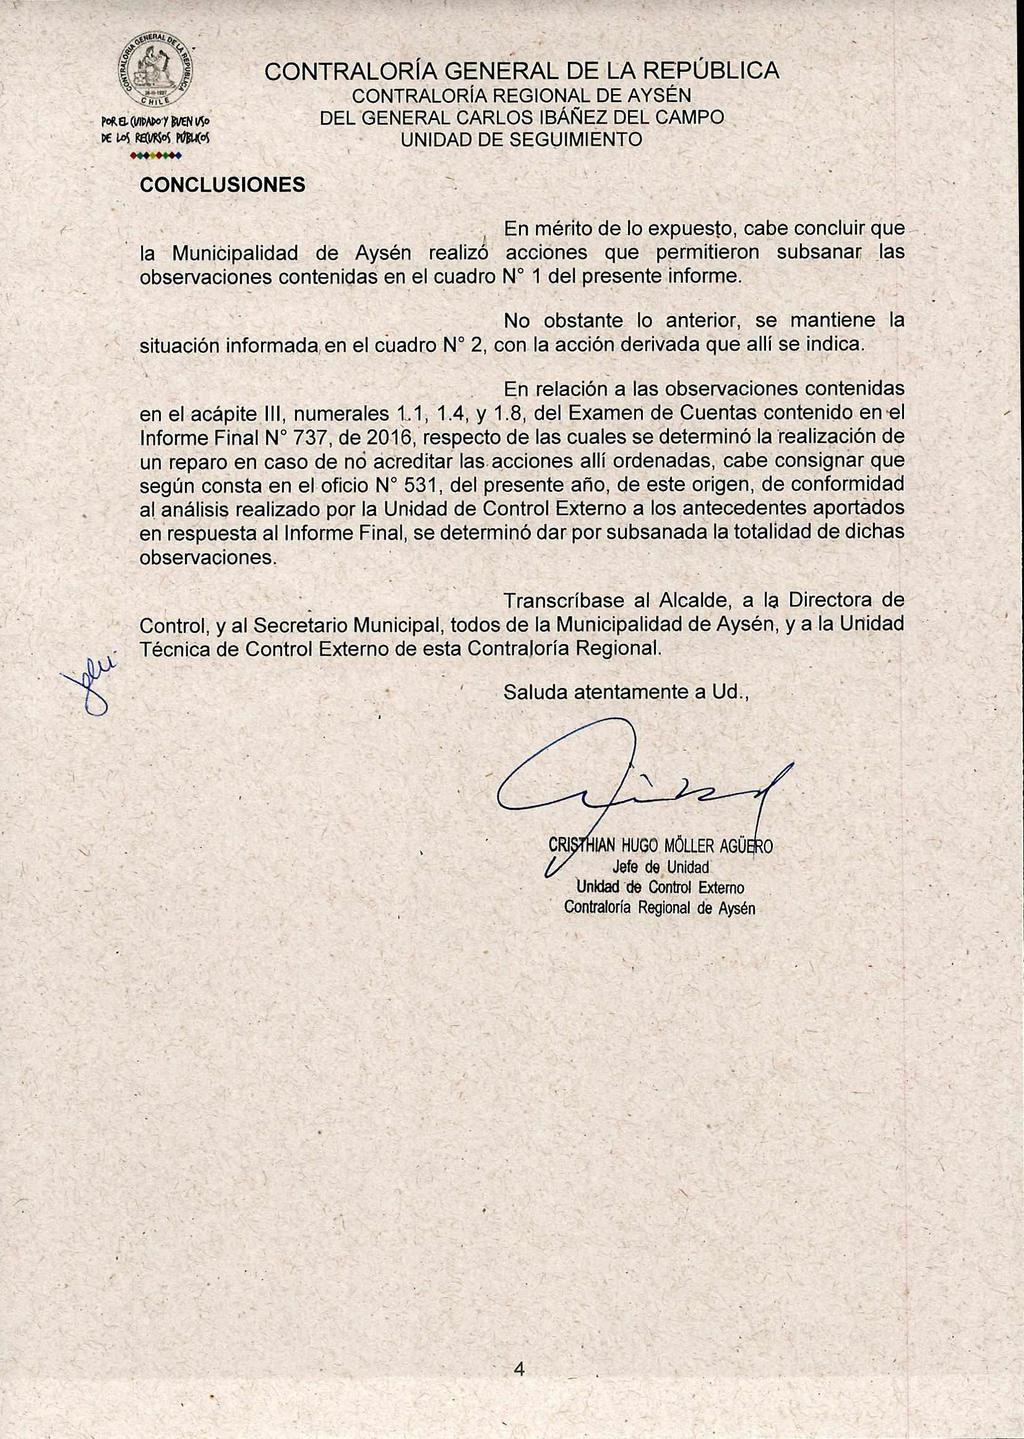 It71-11- Polka (tiipado Y BVEN Vio DE L,05 RE(Pg05 KILOS UNIDAD DE SEGUIMIENTO CONCLUSIONES En mérito de lo expuesto, cabe concluir que la Municipalidad de Aysén realizó acciones que permitieron